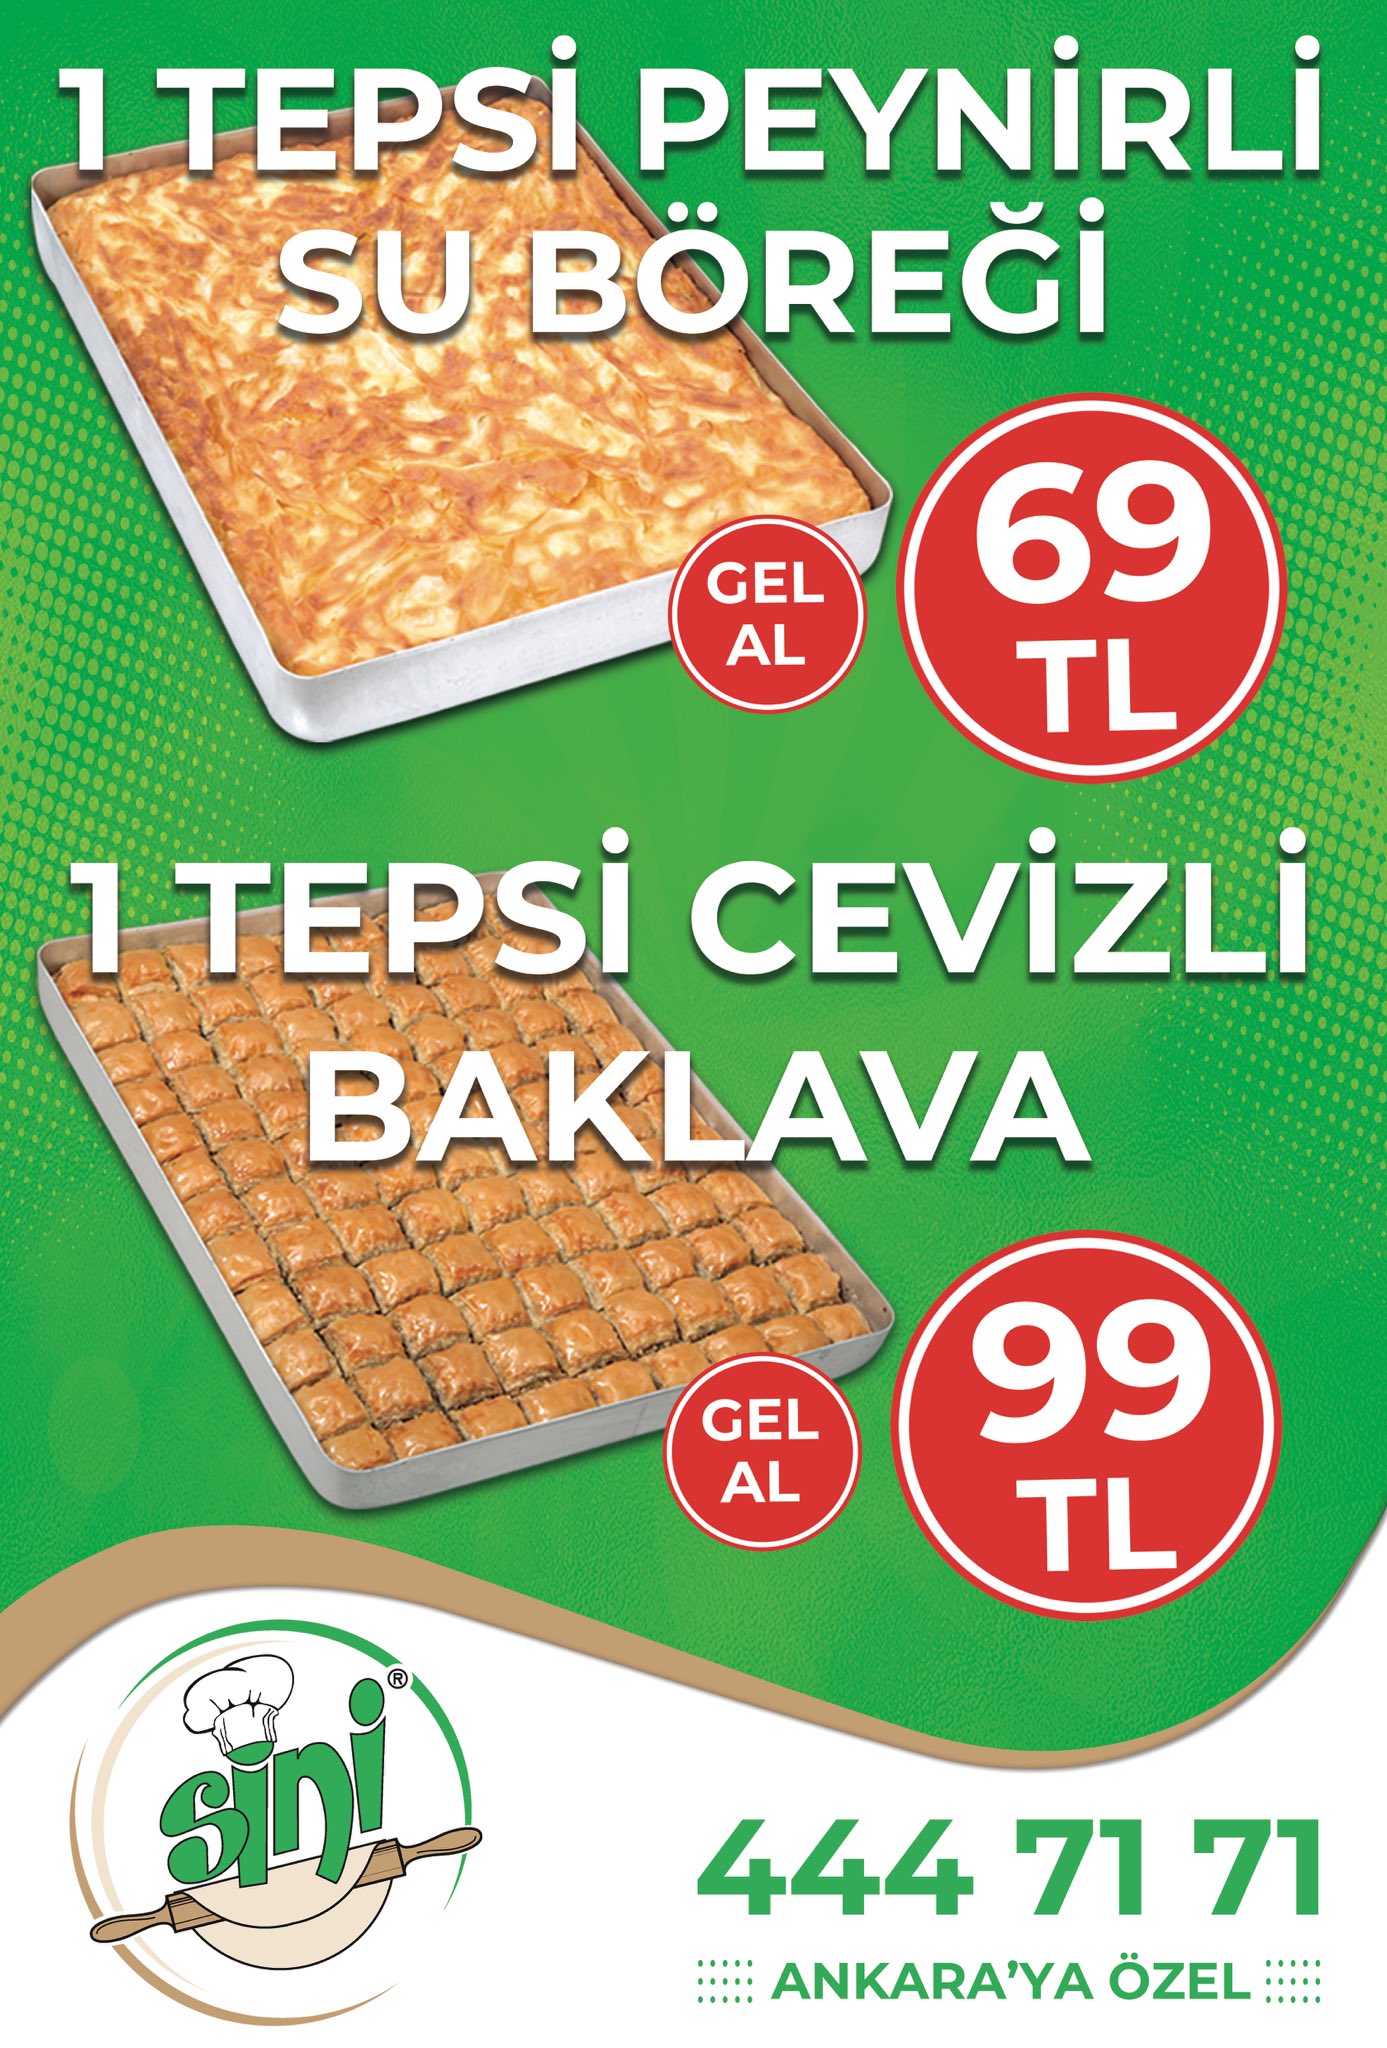 Sini Börek on X: "Sini Ev Böreği & Baklava'da Ankara'ya özel kampanya... 1  Tepsi Peynirli Su Böreği sadece 69TL! 1 Tepsi Cevizli Baklava sadece 99TL!  Kampanyamız GEL-AL siparişleri için geçerlidir. https://t.co/LDo8T3wUGX" /